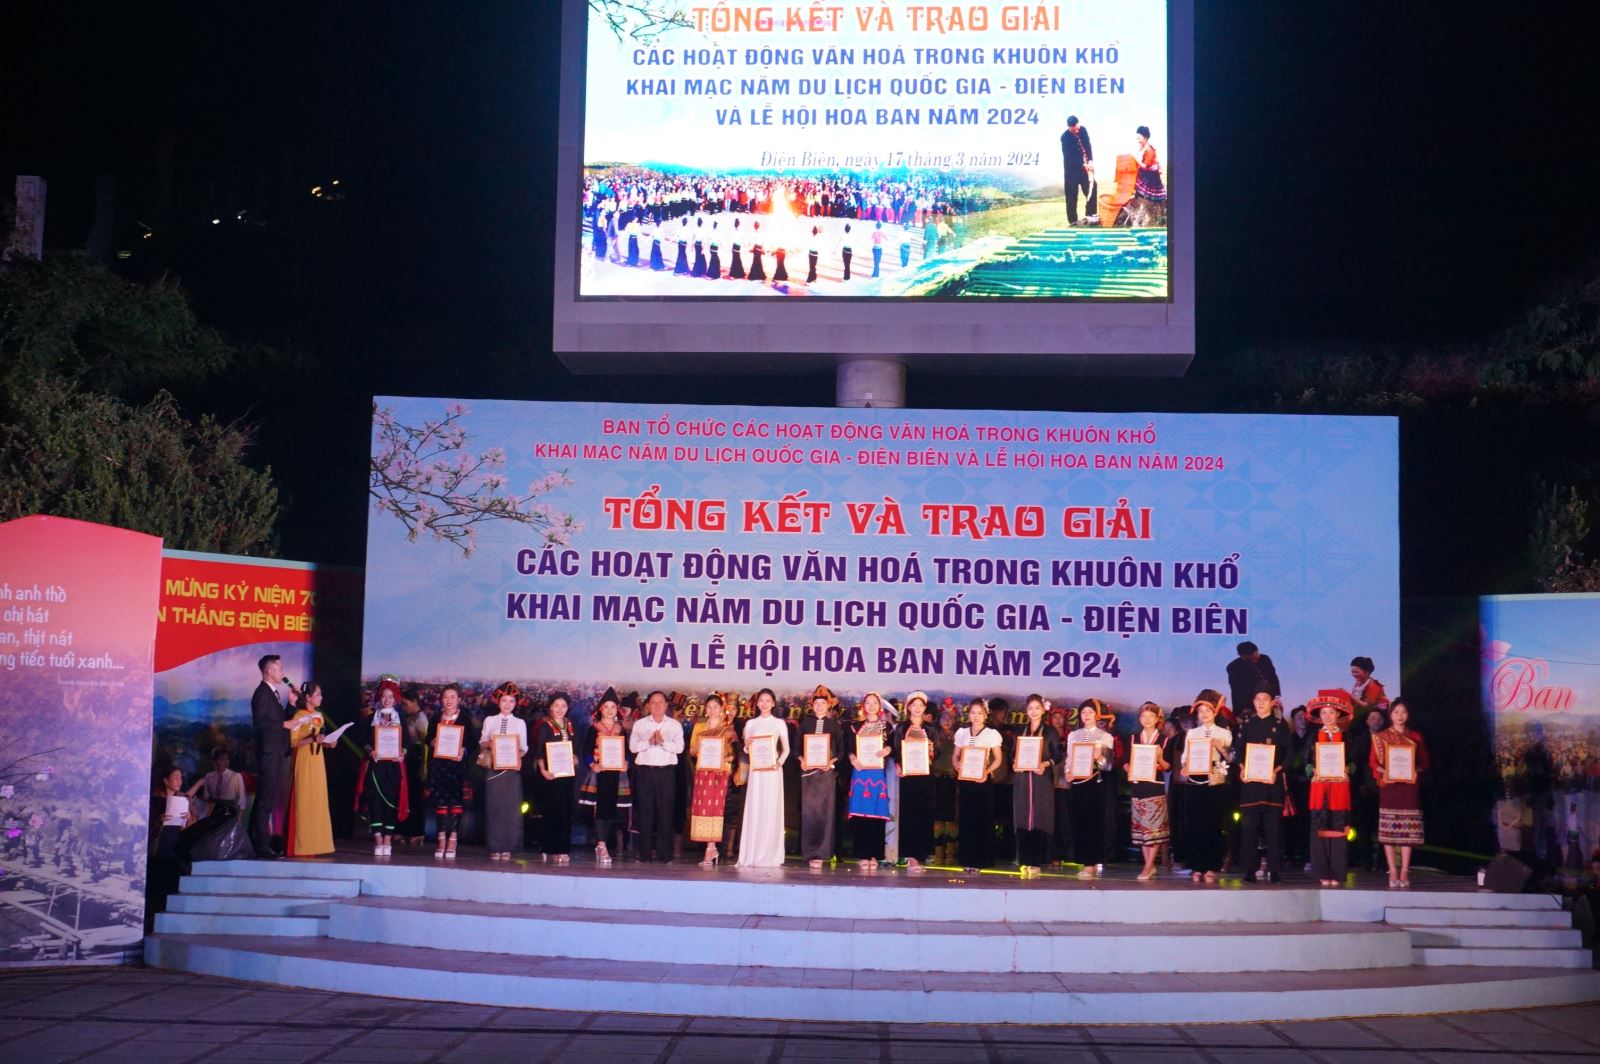 Tổng kết và trao giải các hoạt động văn hóa trong khuôn khổ khai mạc Năm Du lịch quốc gia - Điện Biên và Lễ hội hoa Ban năm 2024